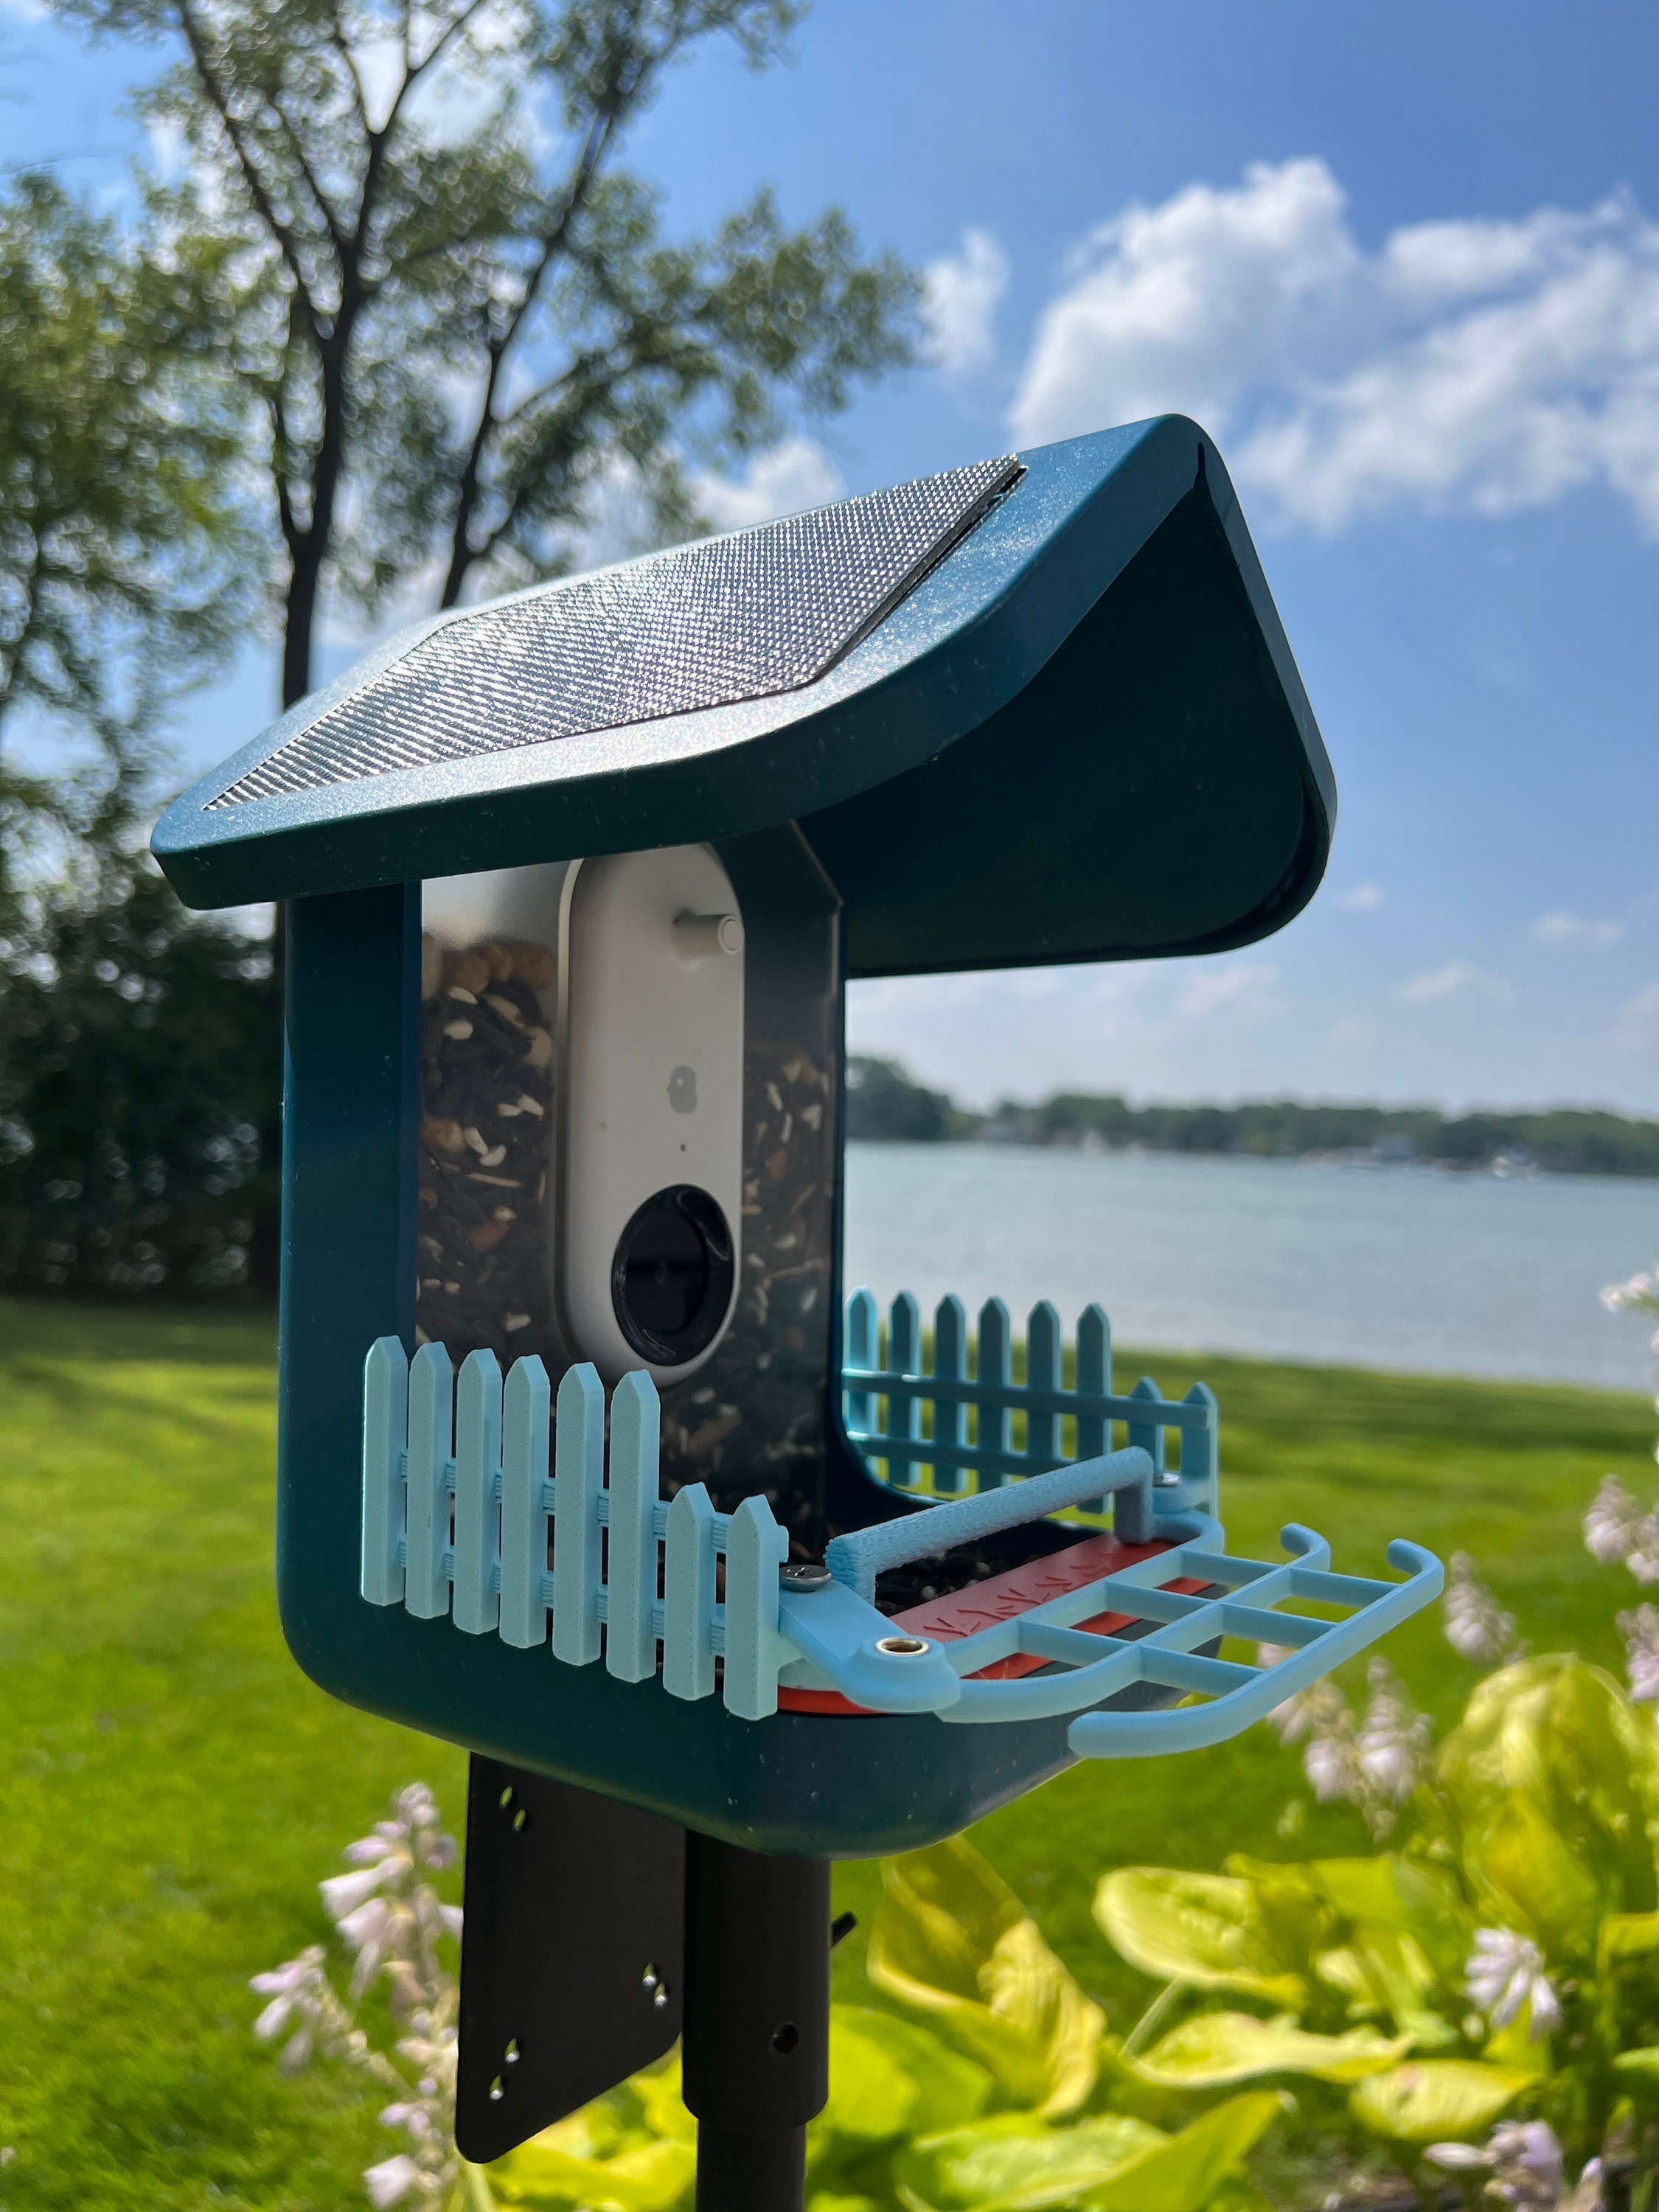 PIAOLGYI Extender for Bird Buddy Bird Feeder,Suet Ball Holder Extension  Accessories Compatible with Bird Buddy Birdfeeder